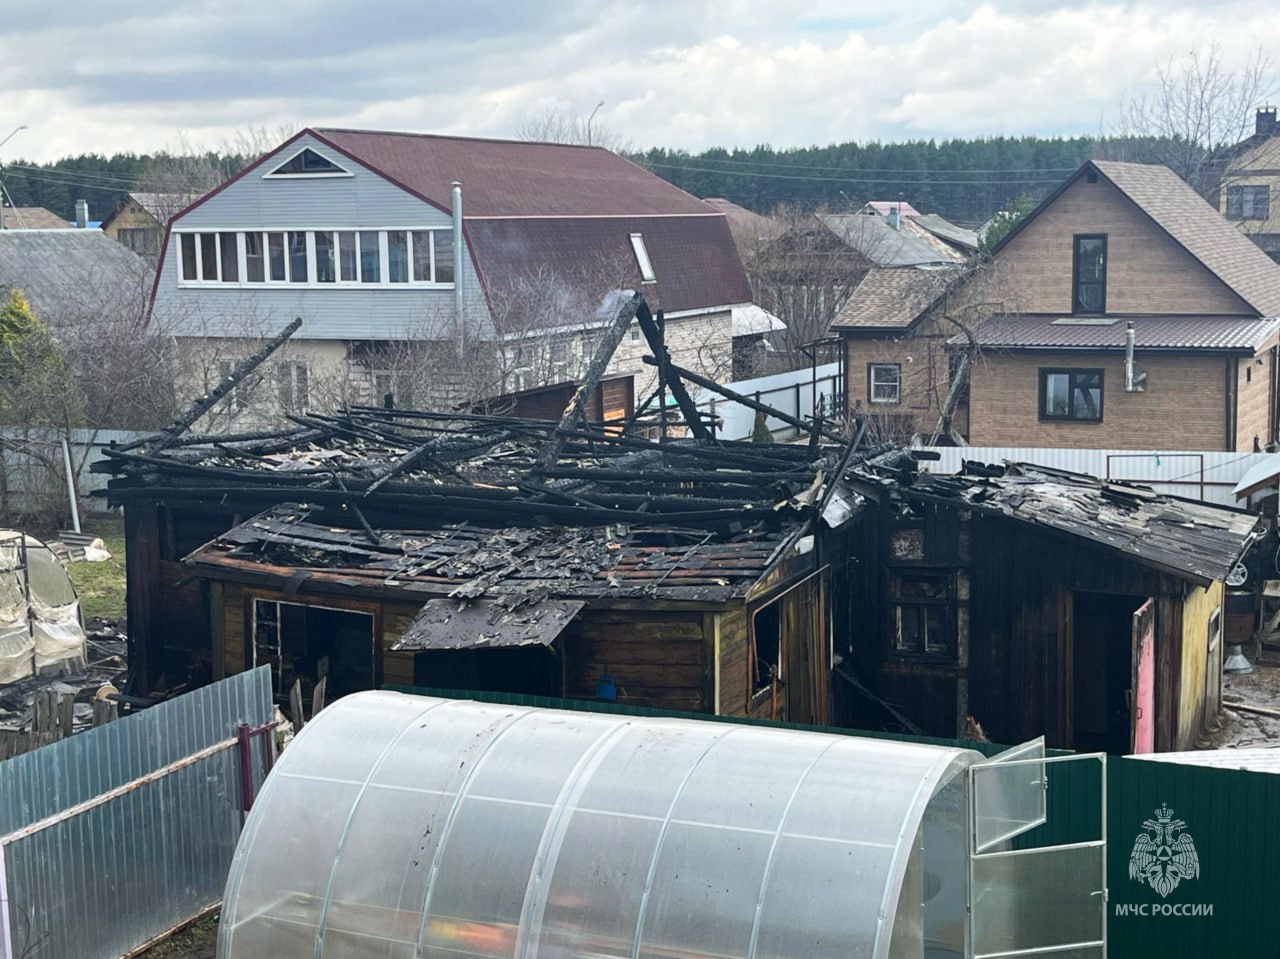 Пожарные чудом спасли от огня костромской квартал